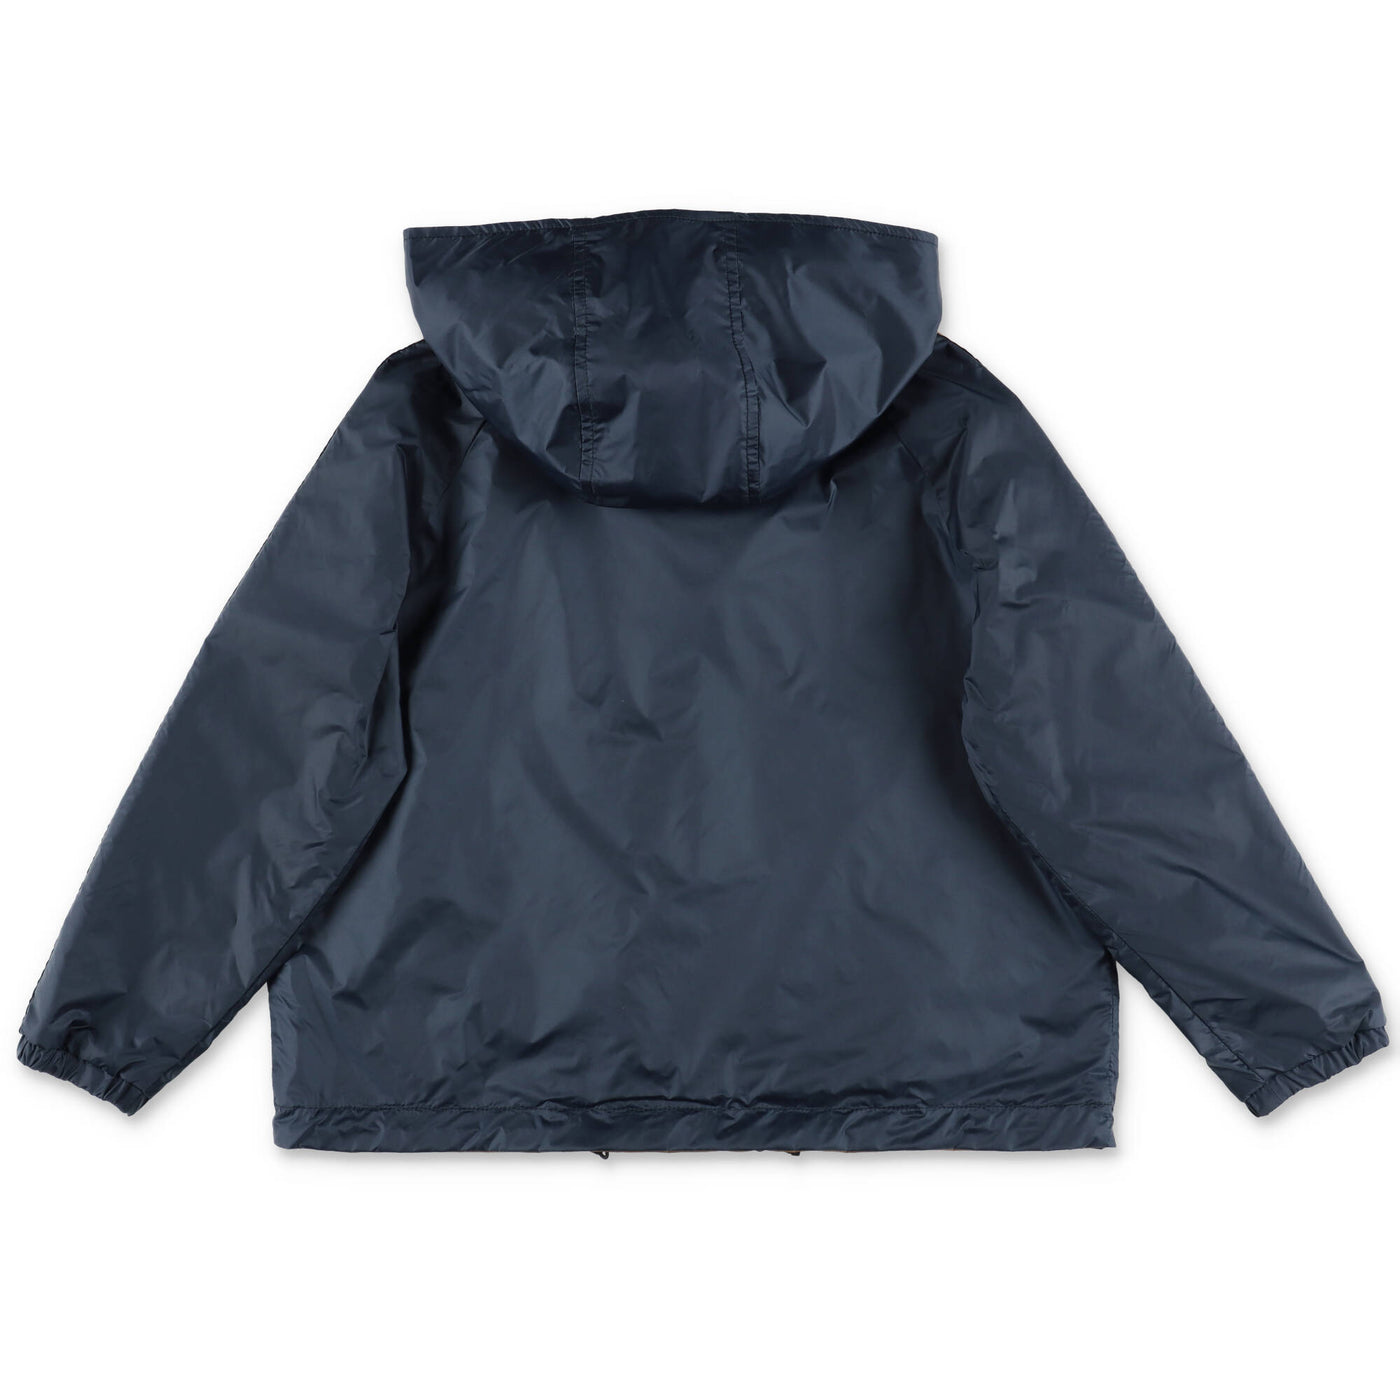 Reversible nylon boy FENDI jacket with hood | Carofiglio Junior